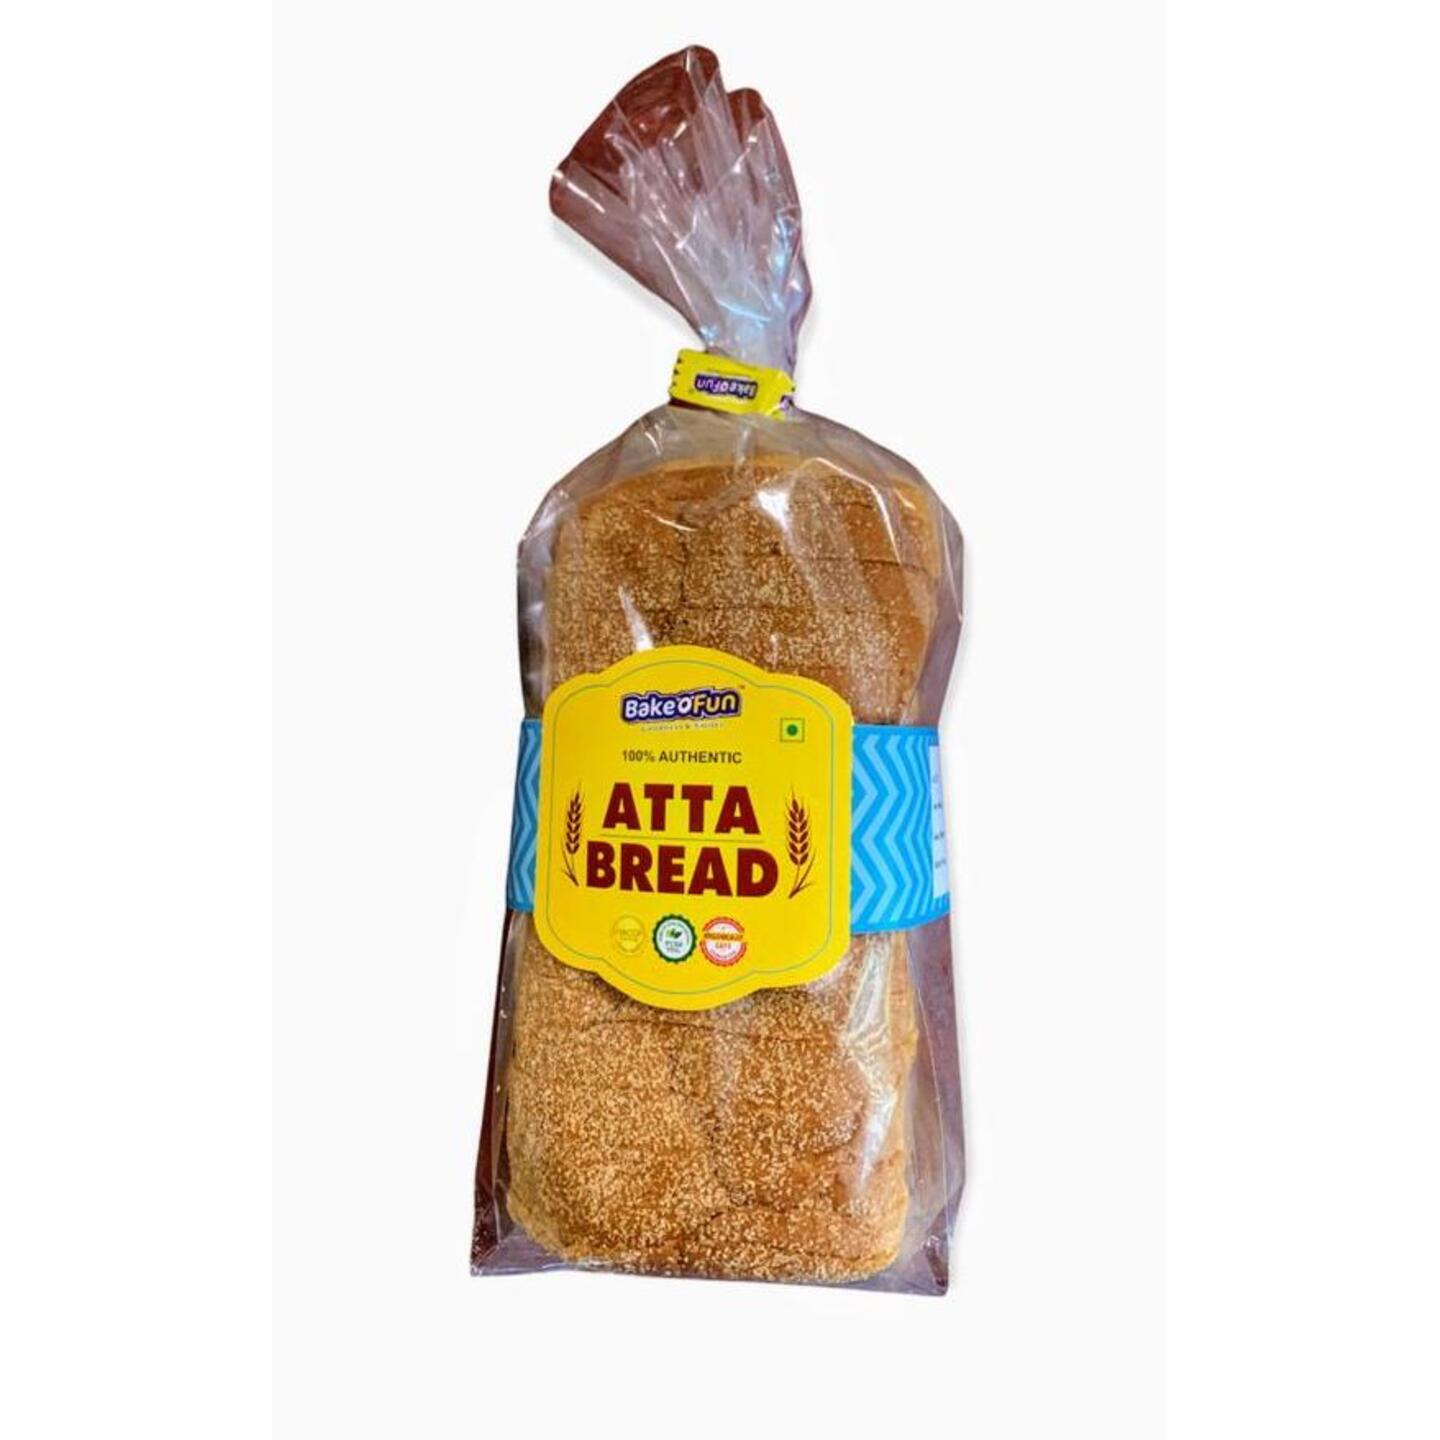 Bakeofun Atta Bread